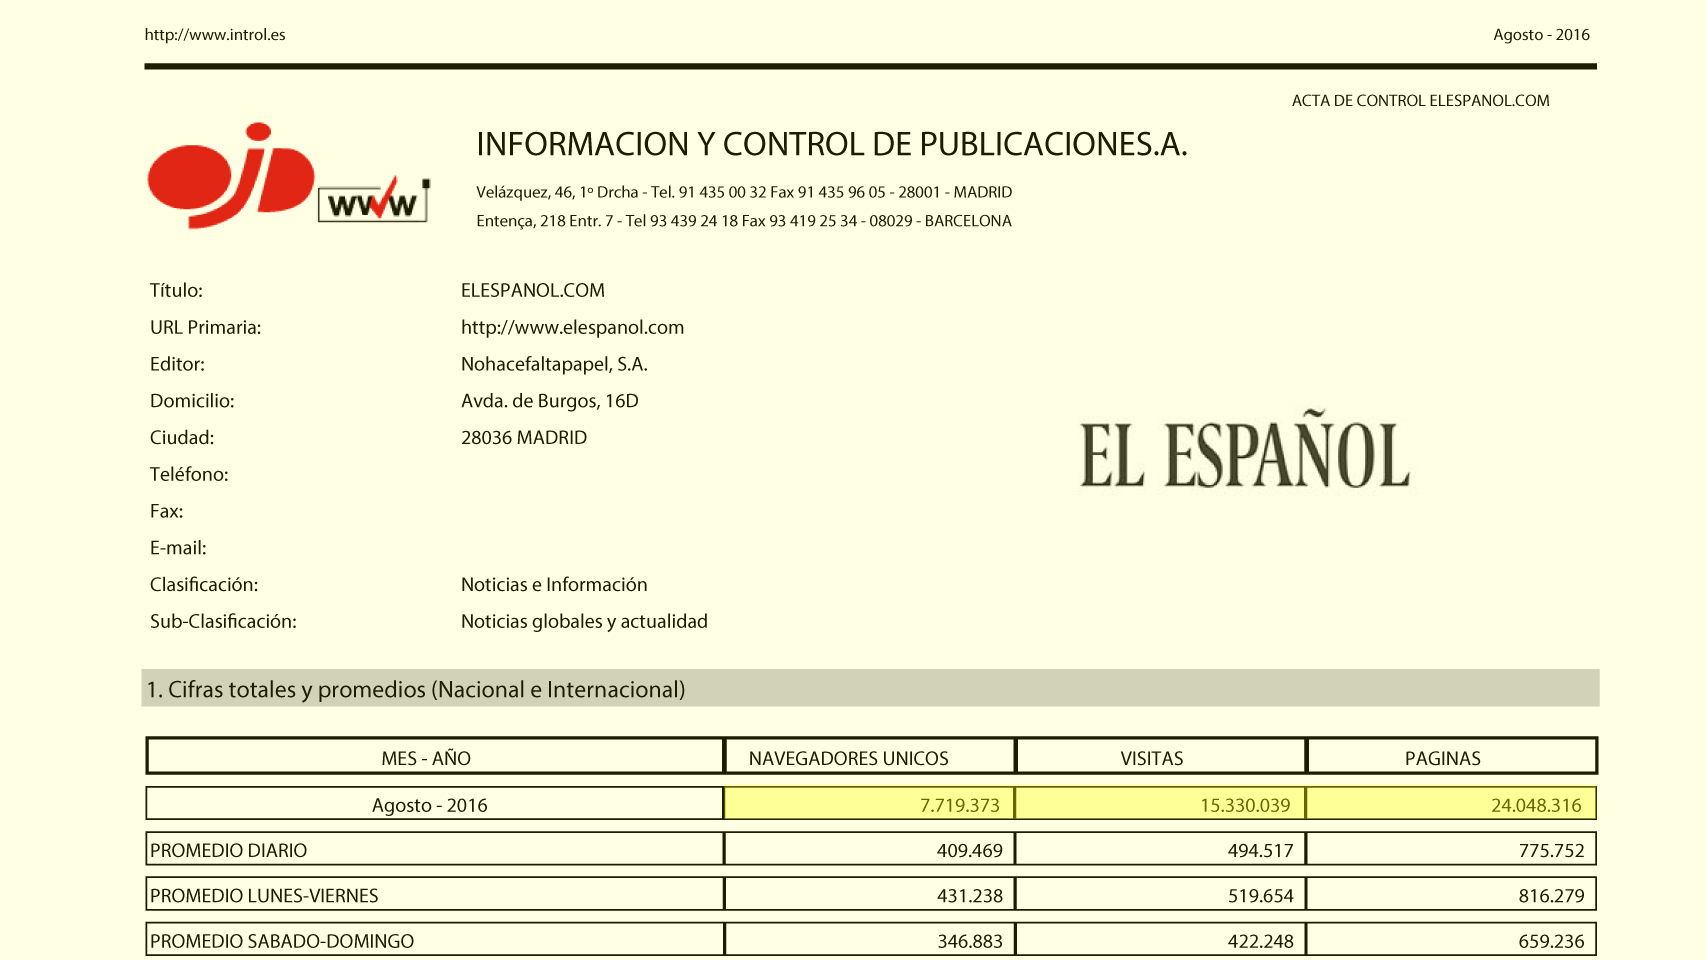 OJD certifica que EL ESPAÑOL superó los 7,7 millones de lectores en agosto